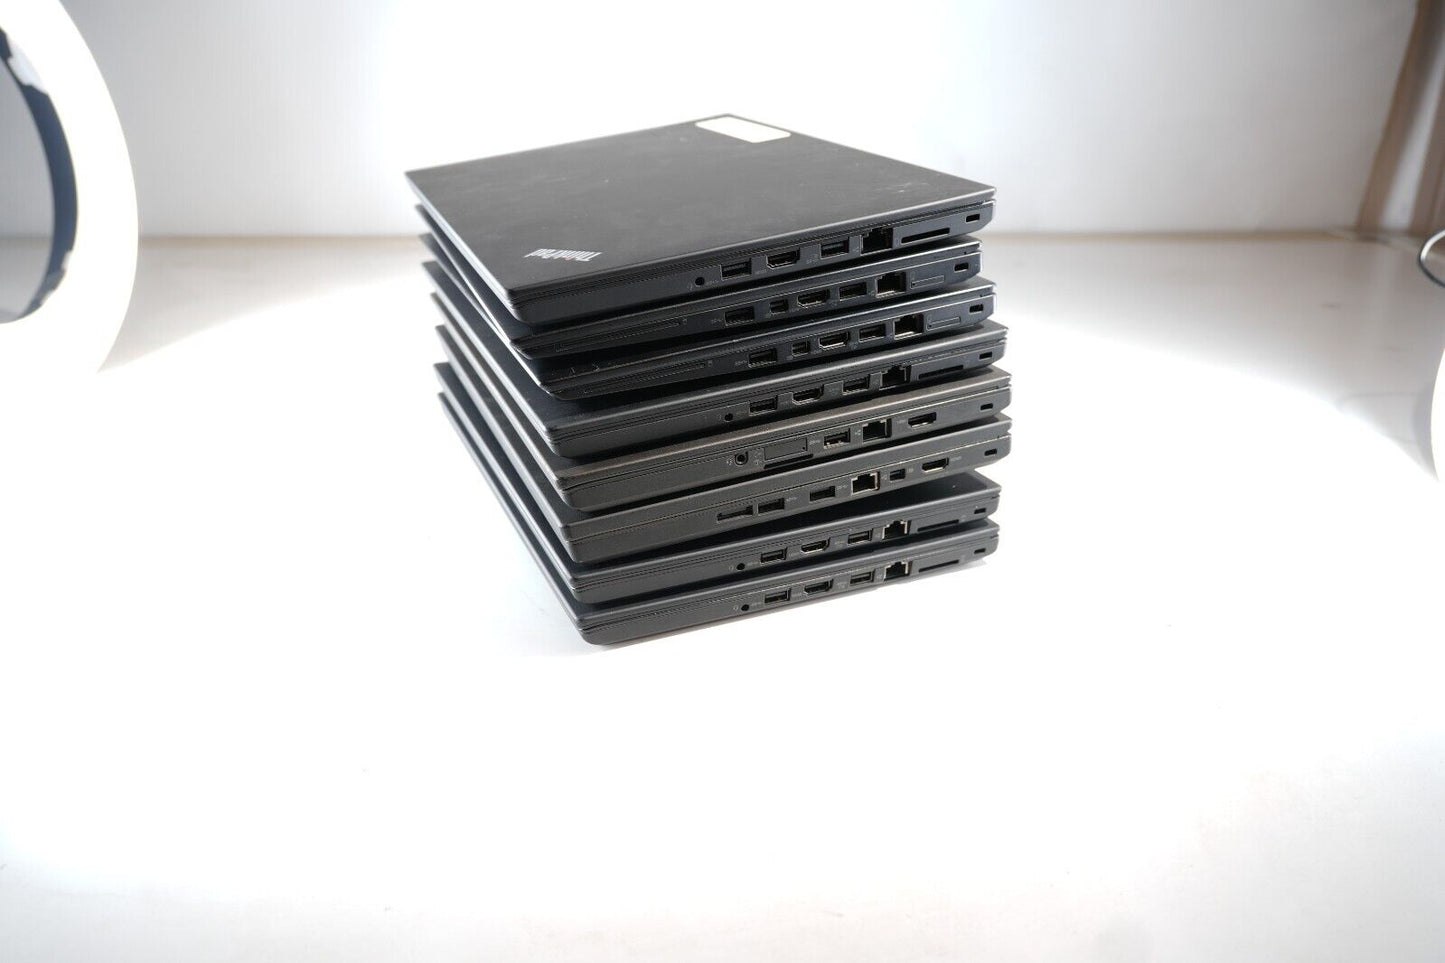 Lot of 8 Lenovo ThinkPad T460, T460s, T460p T470, T480 6th Gen 20GB Ram See Desc